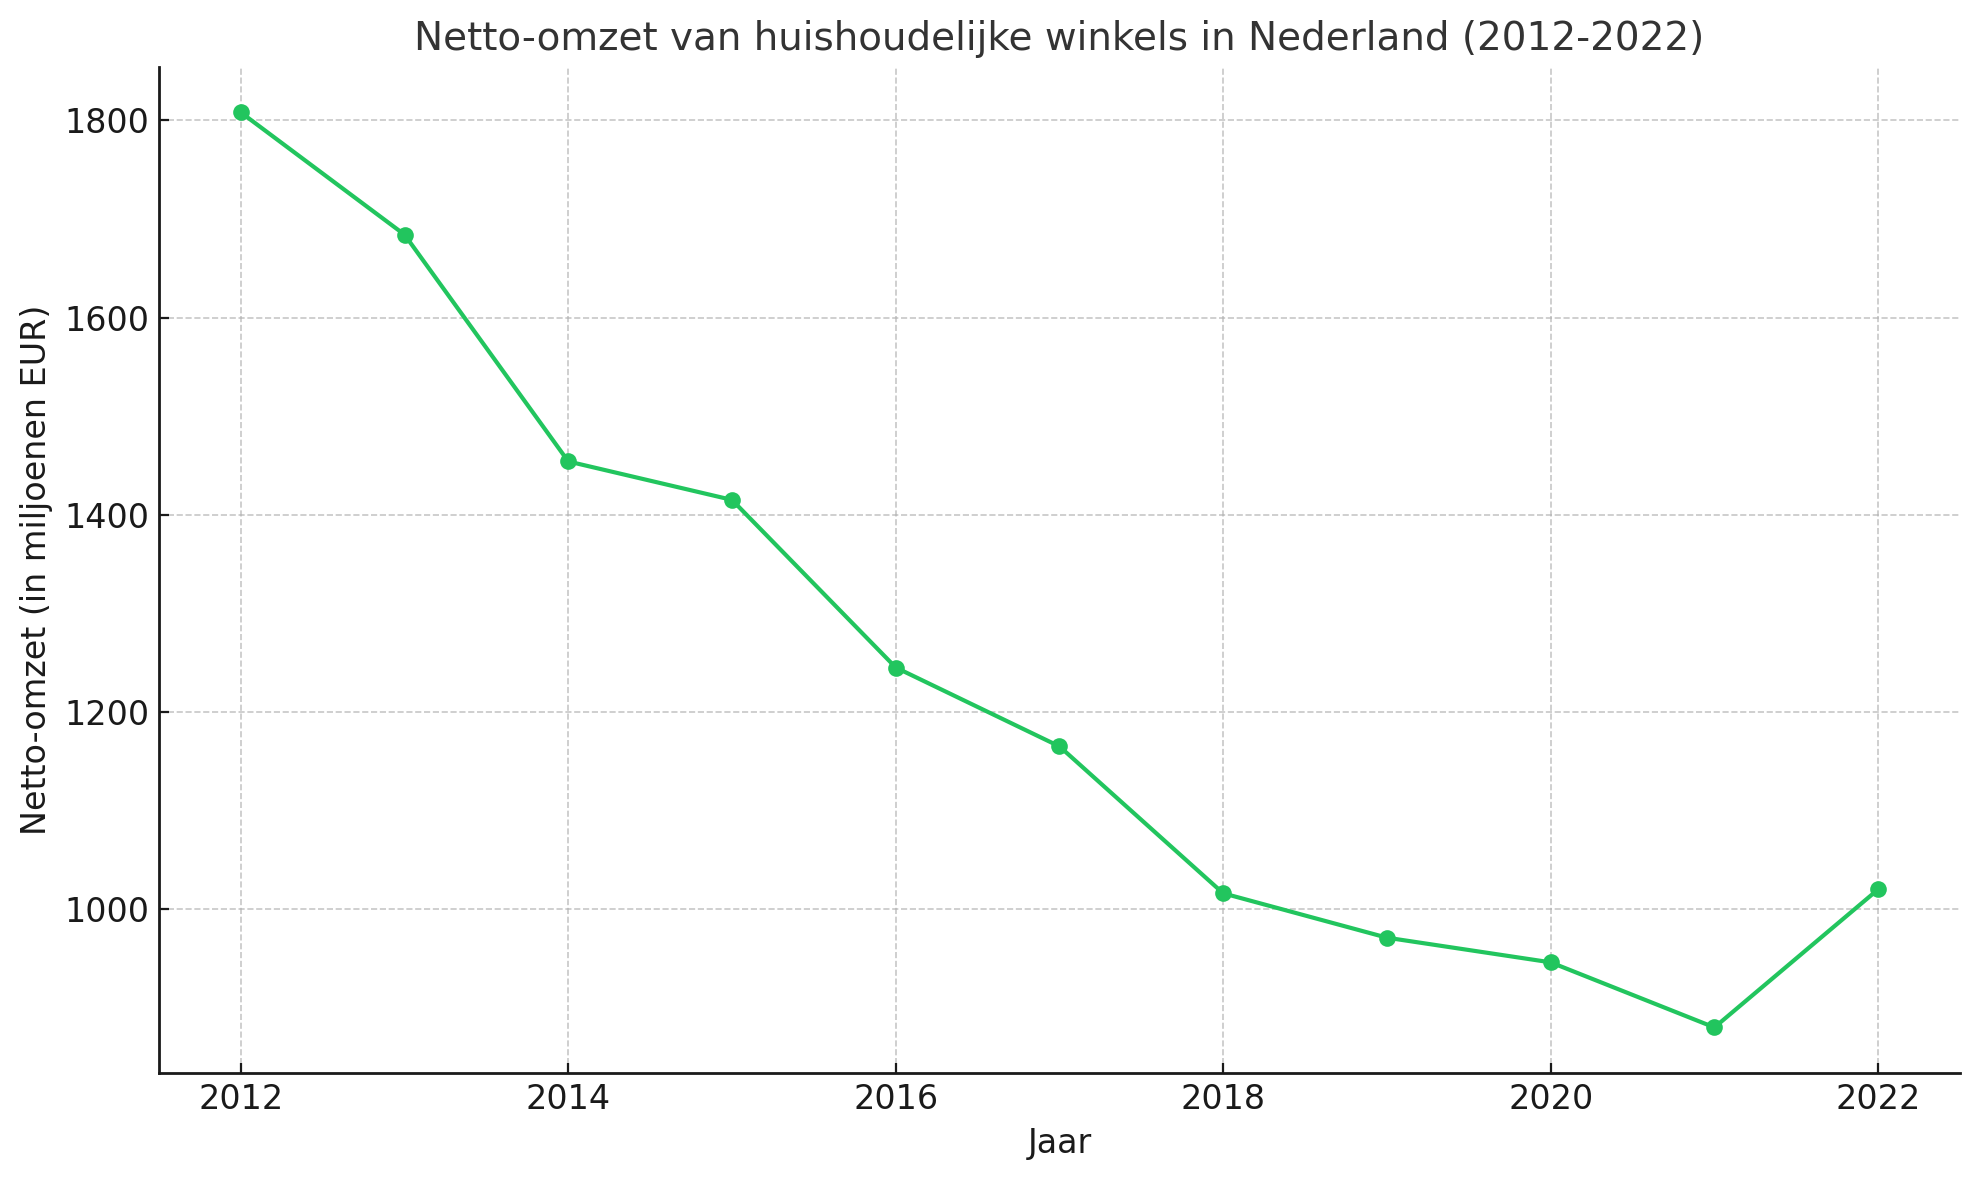 Netto omzet van huishoudelijke winkels in Nederland